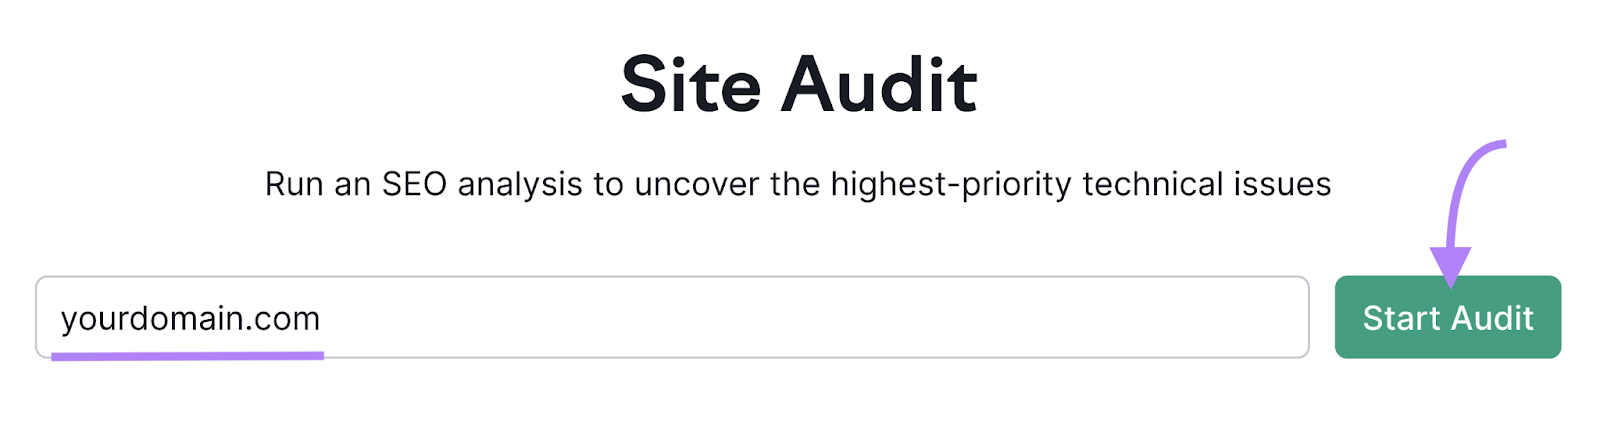 Site Audit Tool